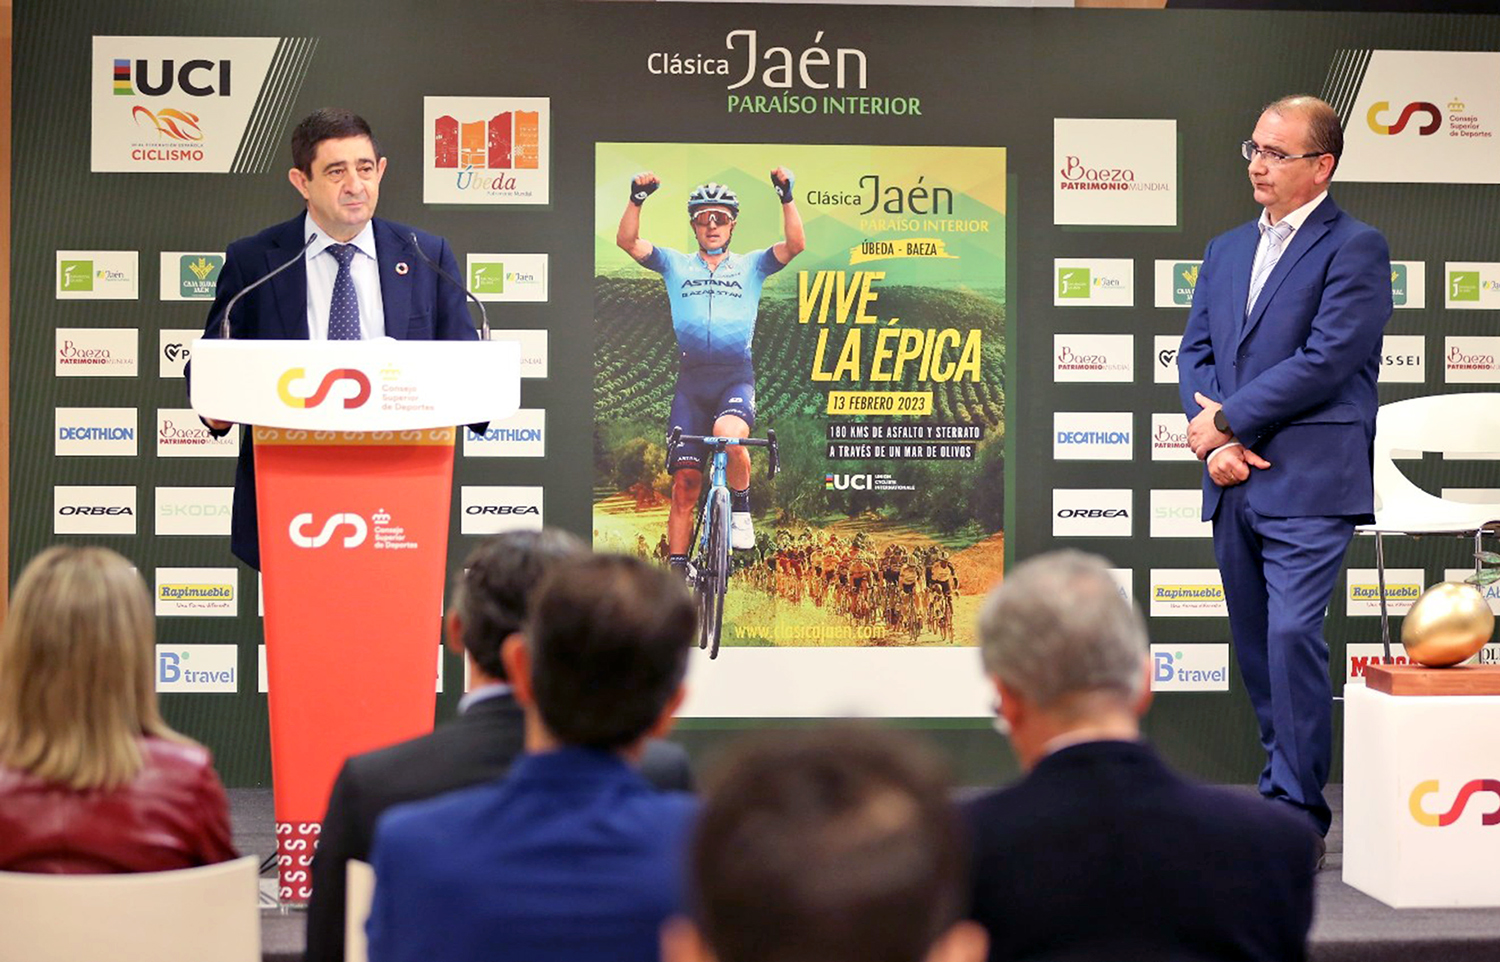 Francisco Reyes confía en la consolidación de la ruta Clásica Jaén Paraíso Interior en el calendario ciclista internacional